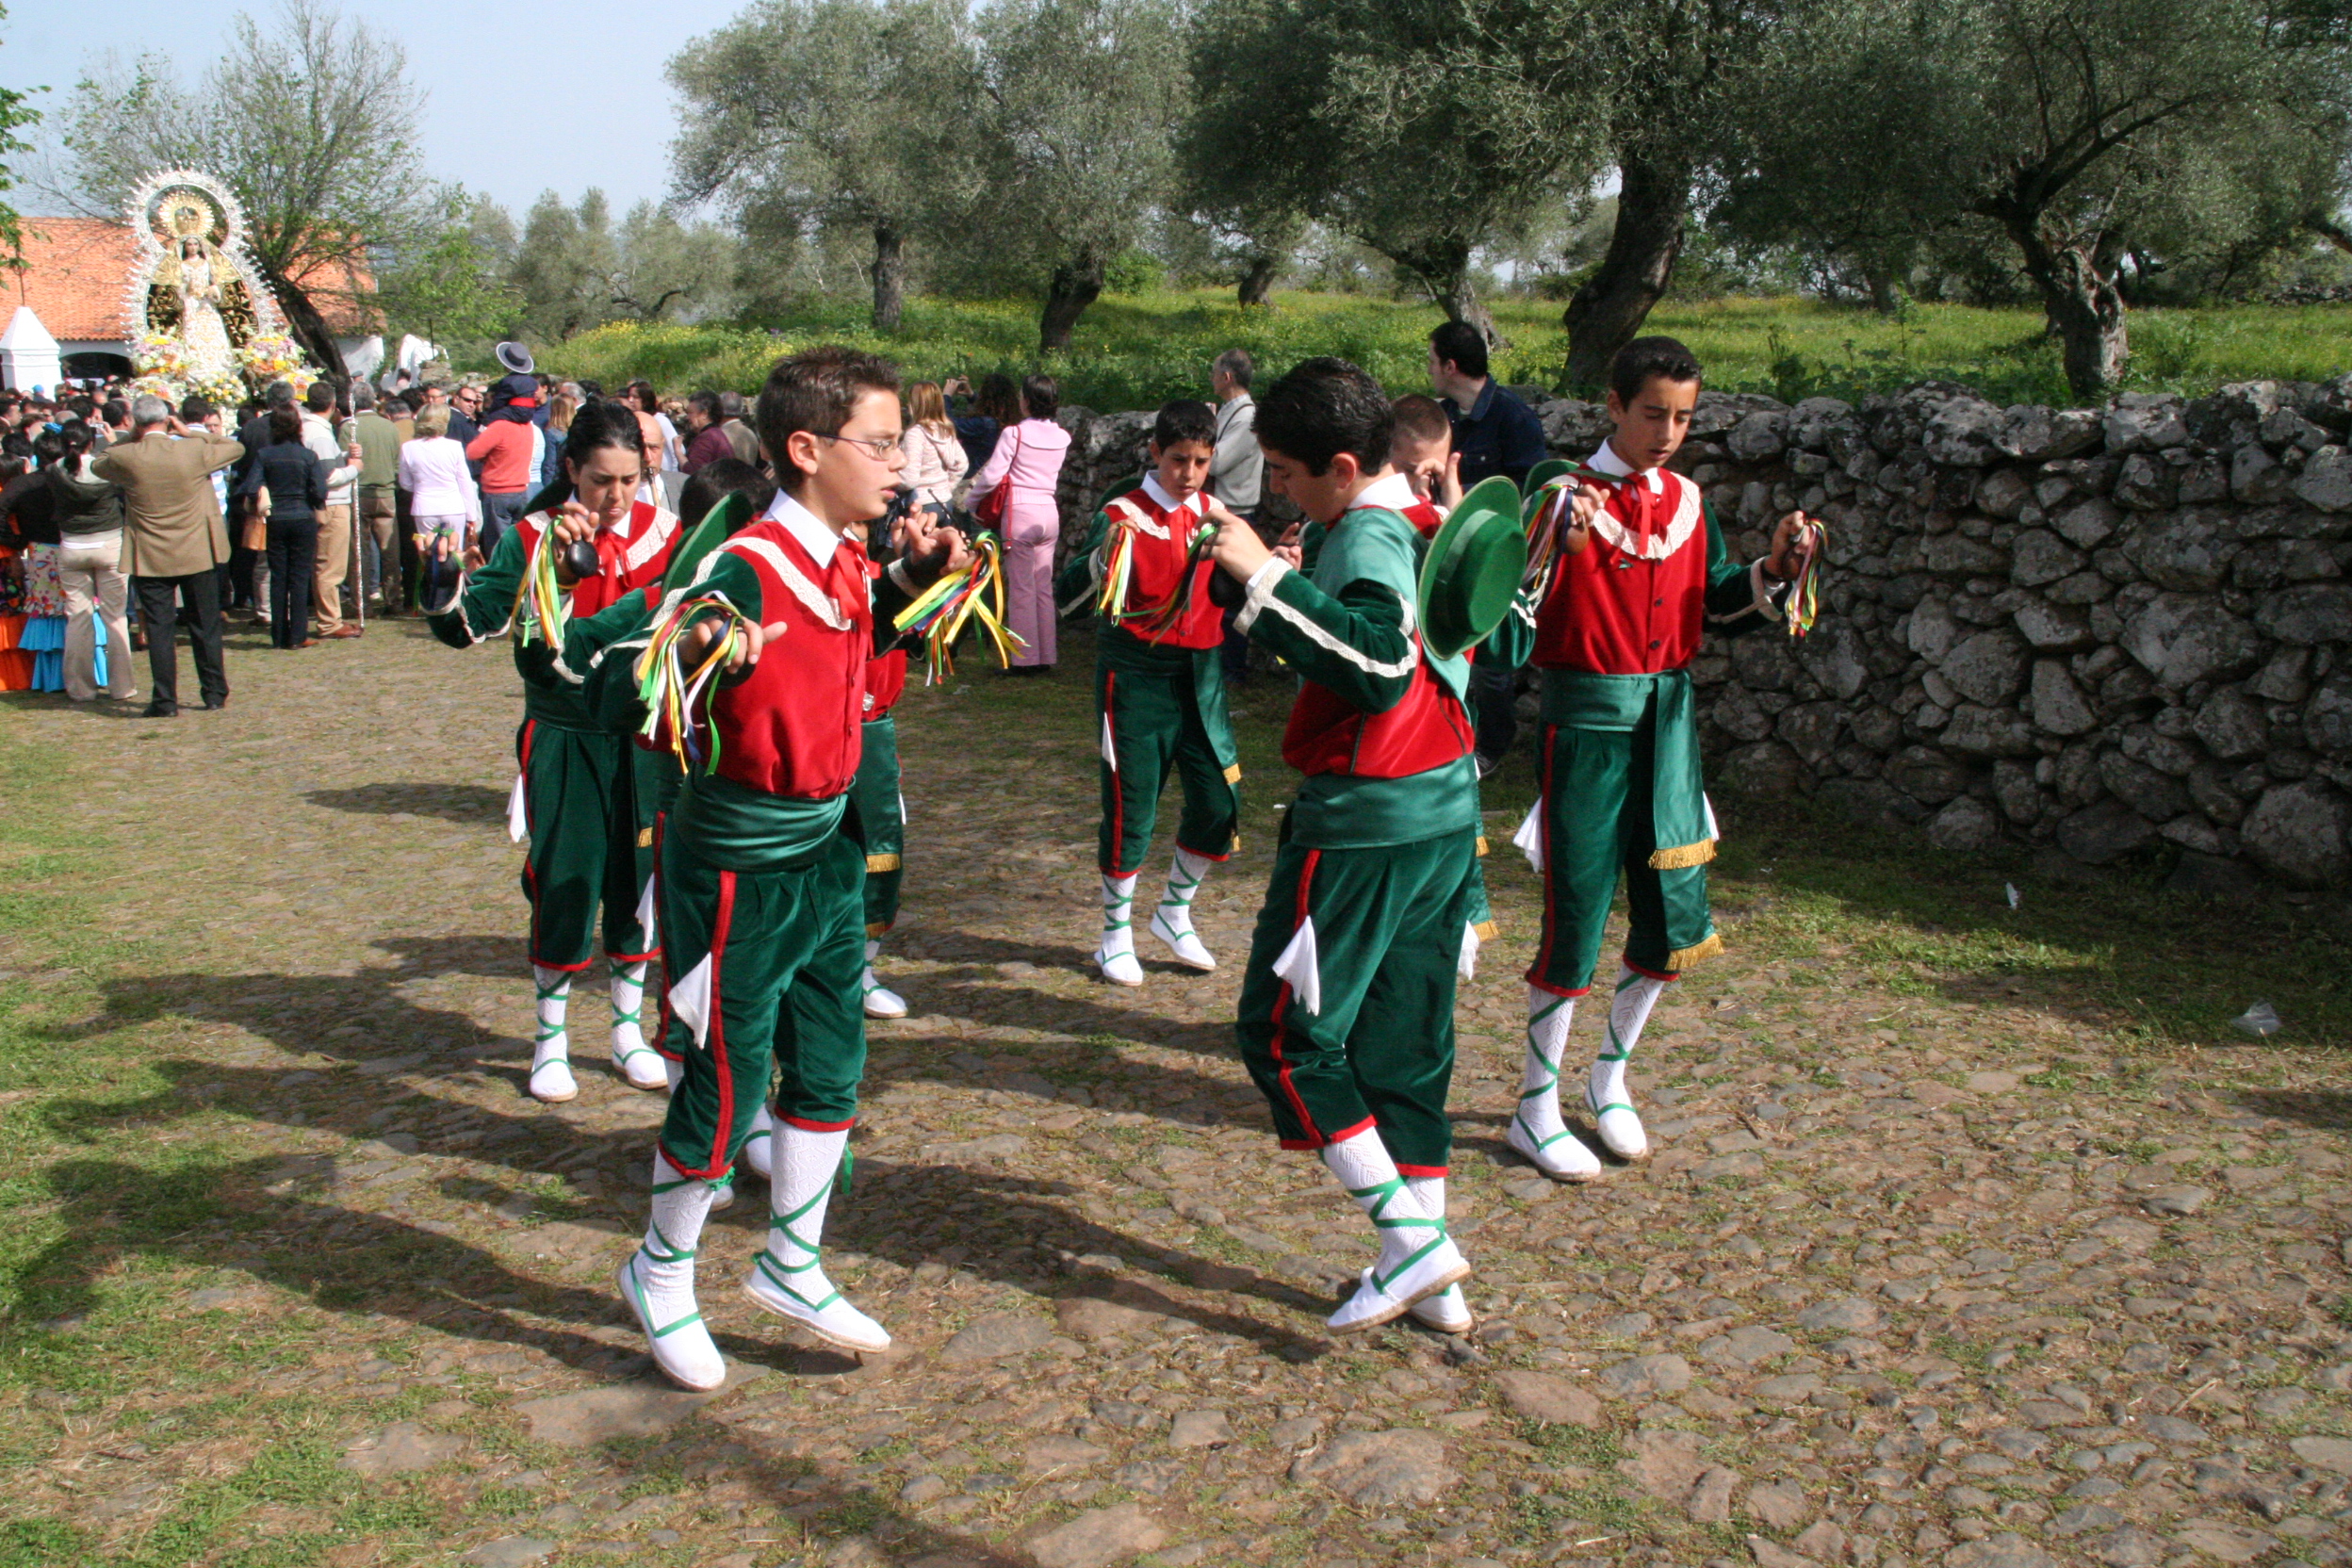 03 Danza en honor a la Virgen de la Esperanza. Grupo de danza infantil. Cumbre Mayores, Huelva